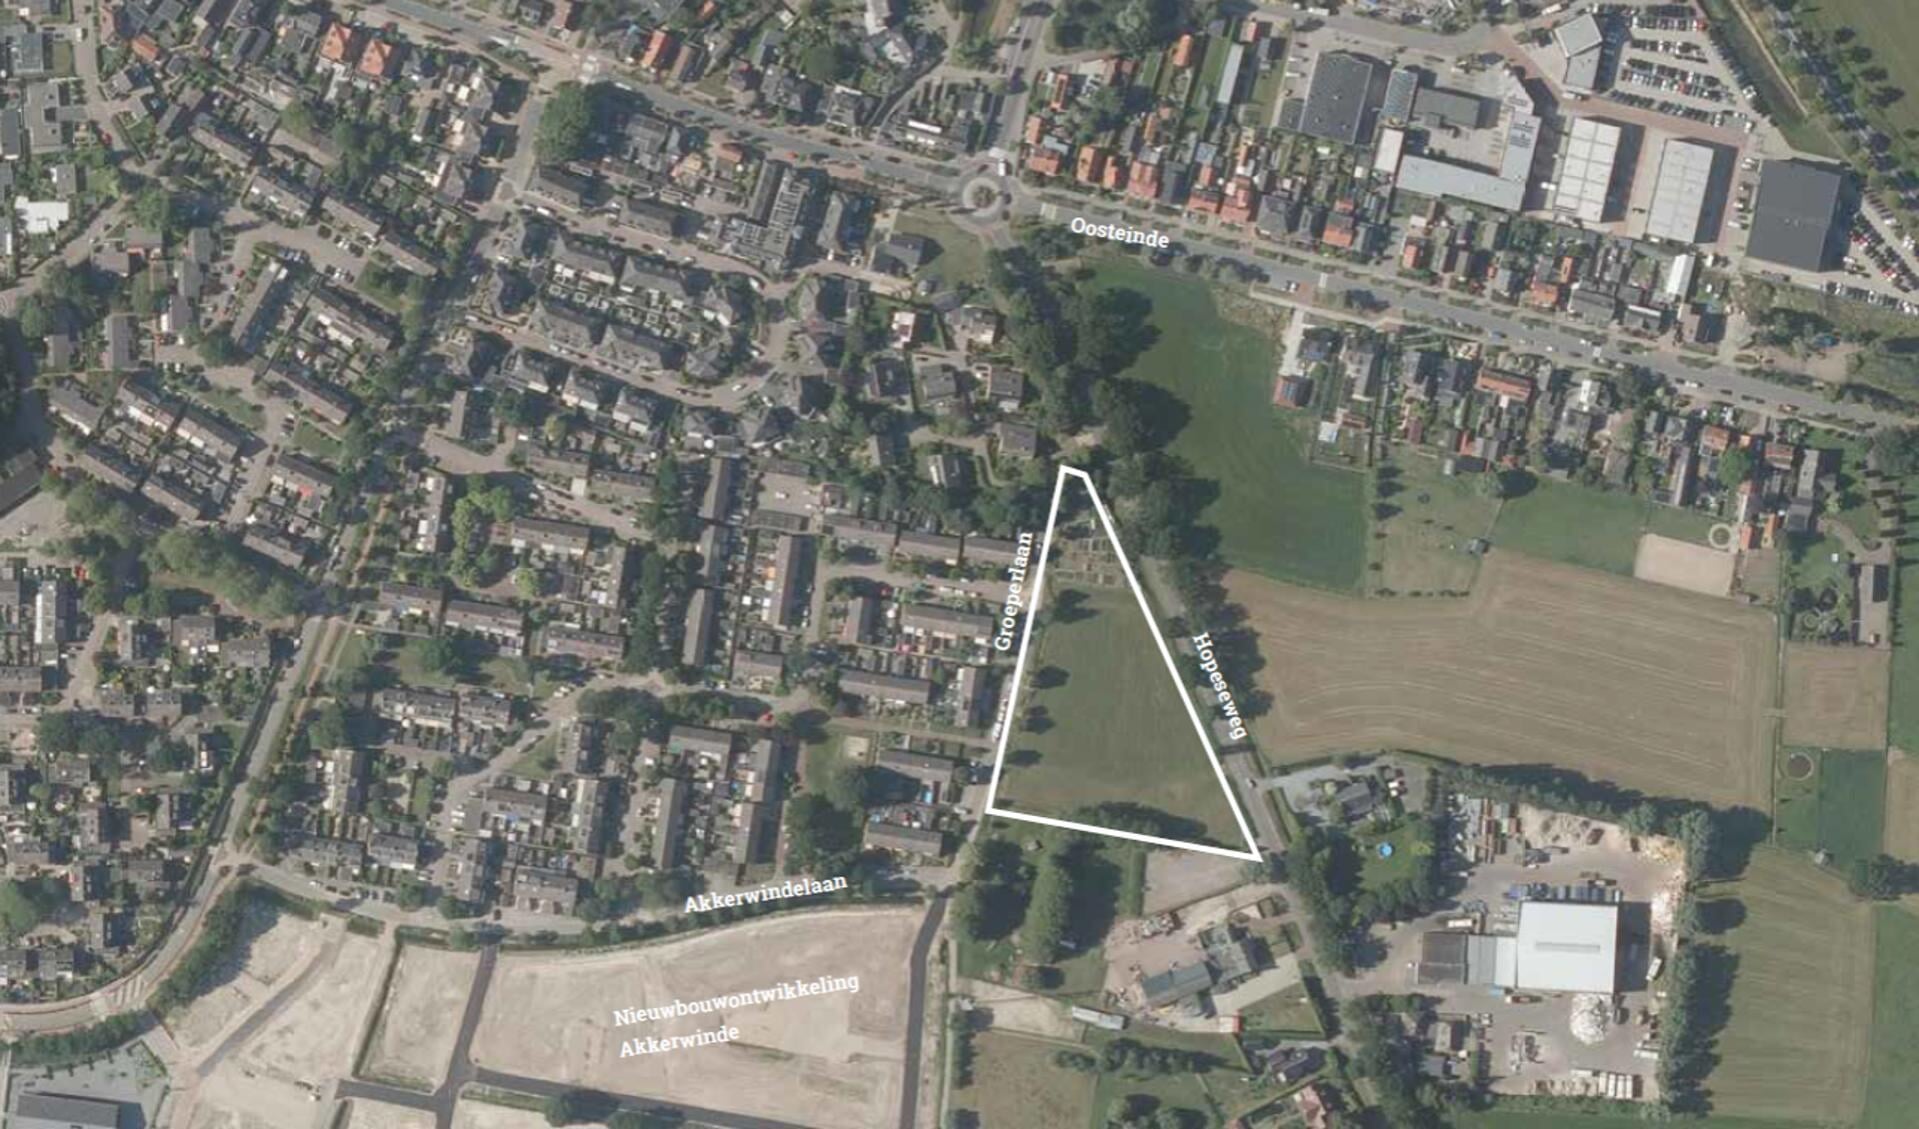 Op de locatie tussen de Hopeseweg en de Groeperlaan ligt het bouwperceel in de vorm van een driehoek.